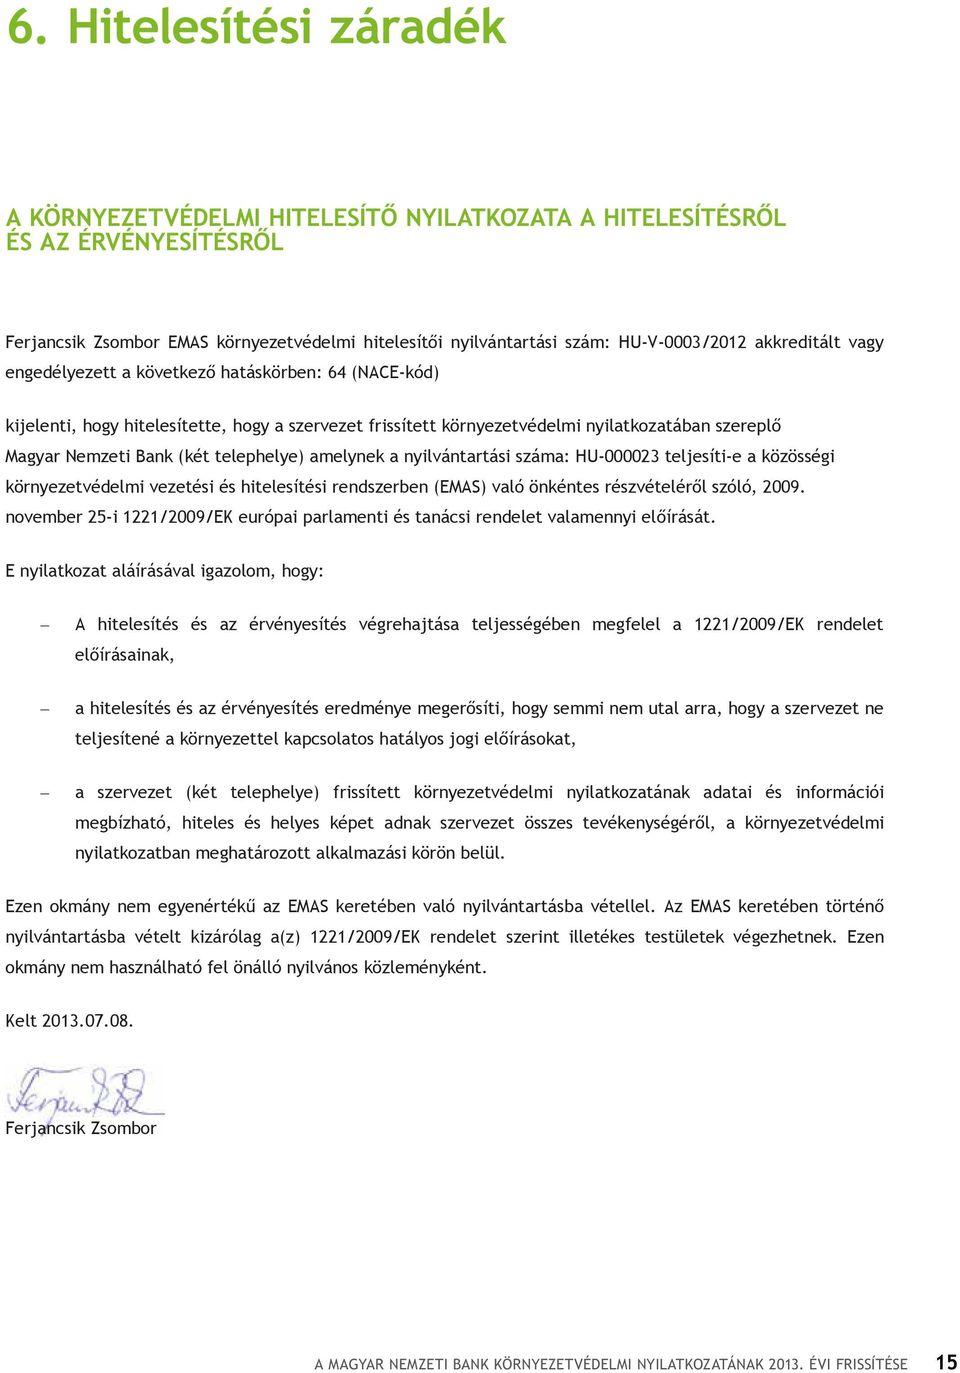 Zsombor EMAS környezetvédelmi hitelesítői nyilvántartási szám: HU-V-0003/2012 akkreditált vagy engedélyezett a következő hatáskörben: 64 (NACE-kód) kijelenti, hogy hitelesítette, hogy a szervezet